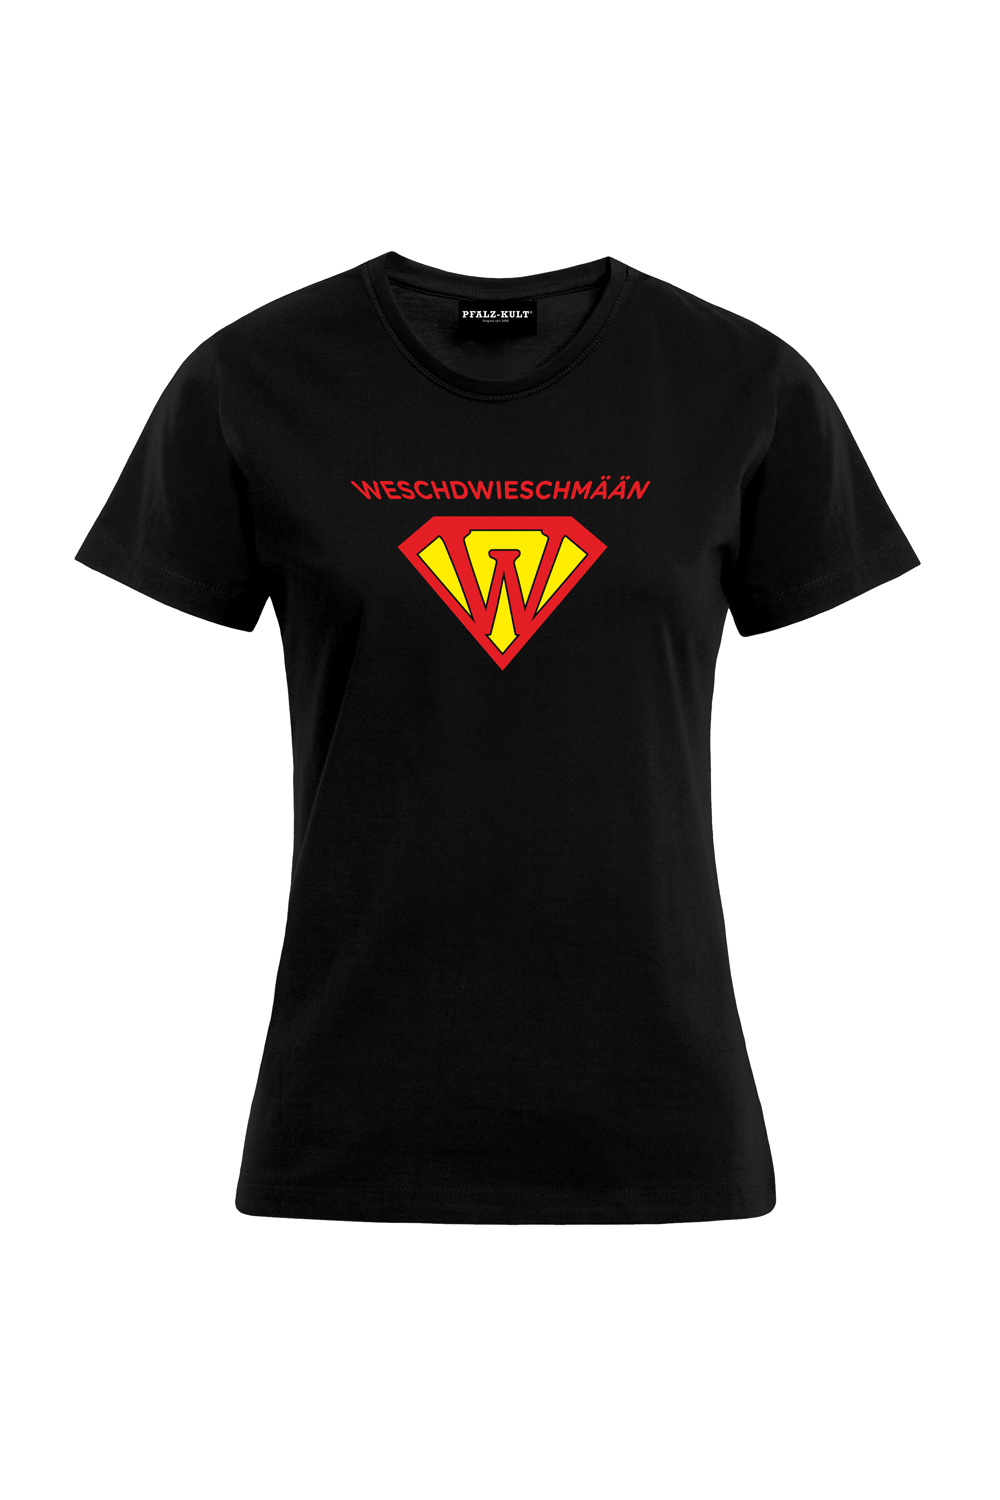 Weschdwieschmään - Frauen T-Shirt